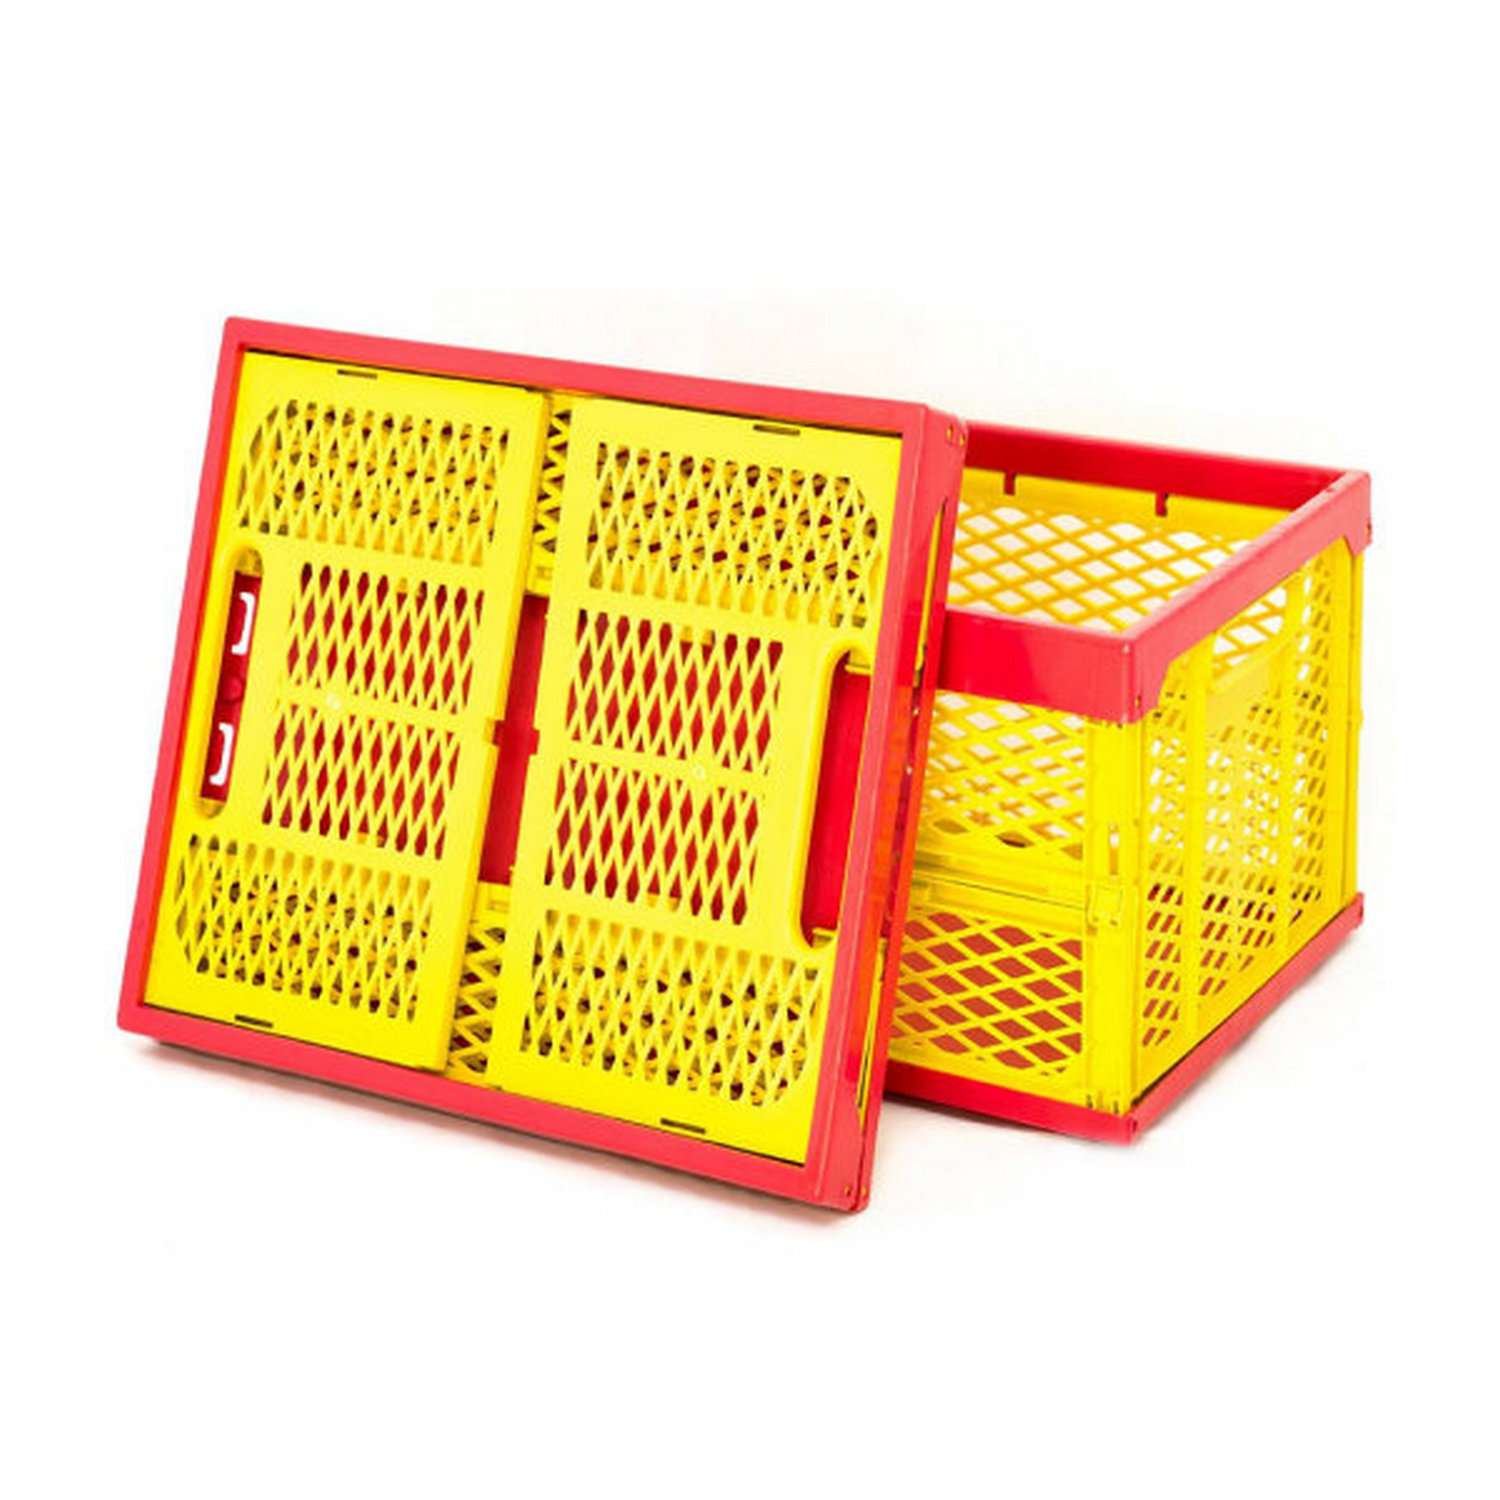 Ящик для игрушек Пеликан складной перфорированный красно-желтый - фото 1